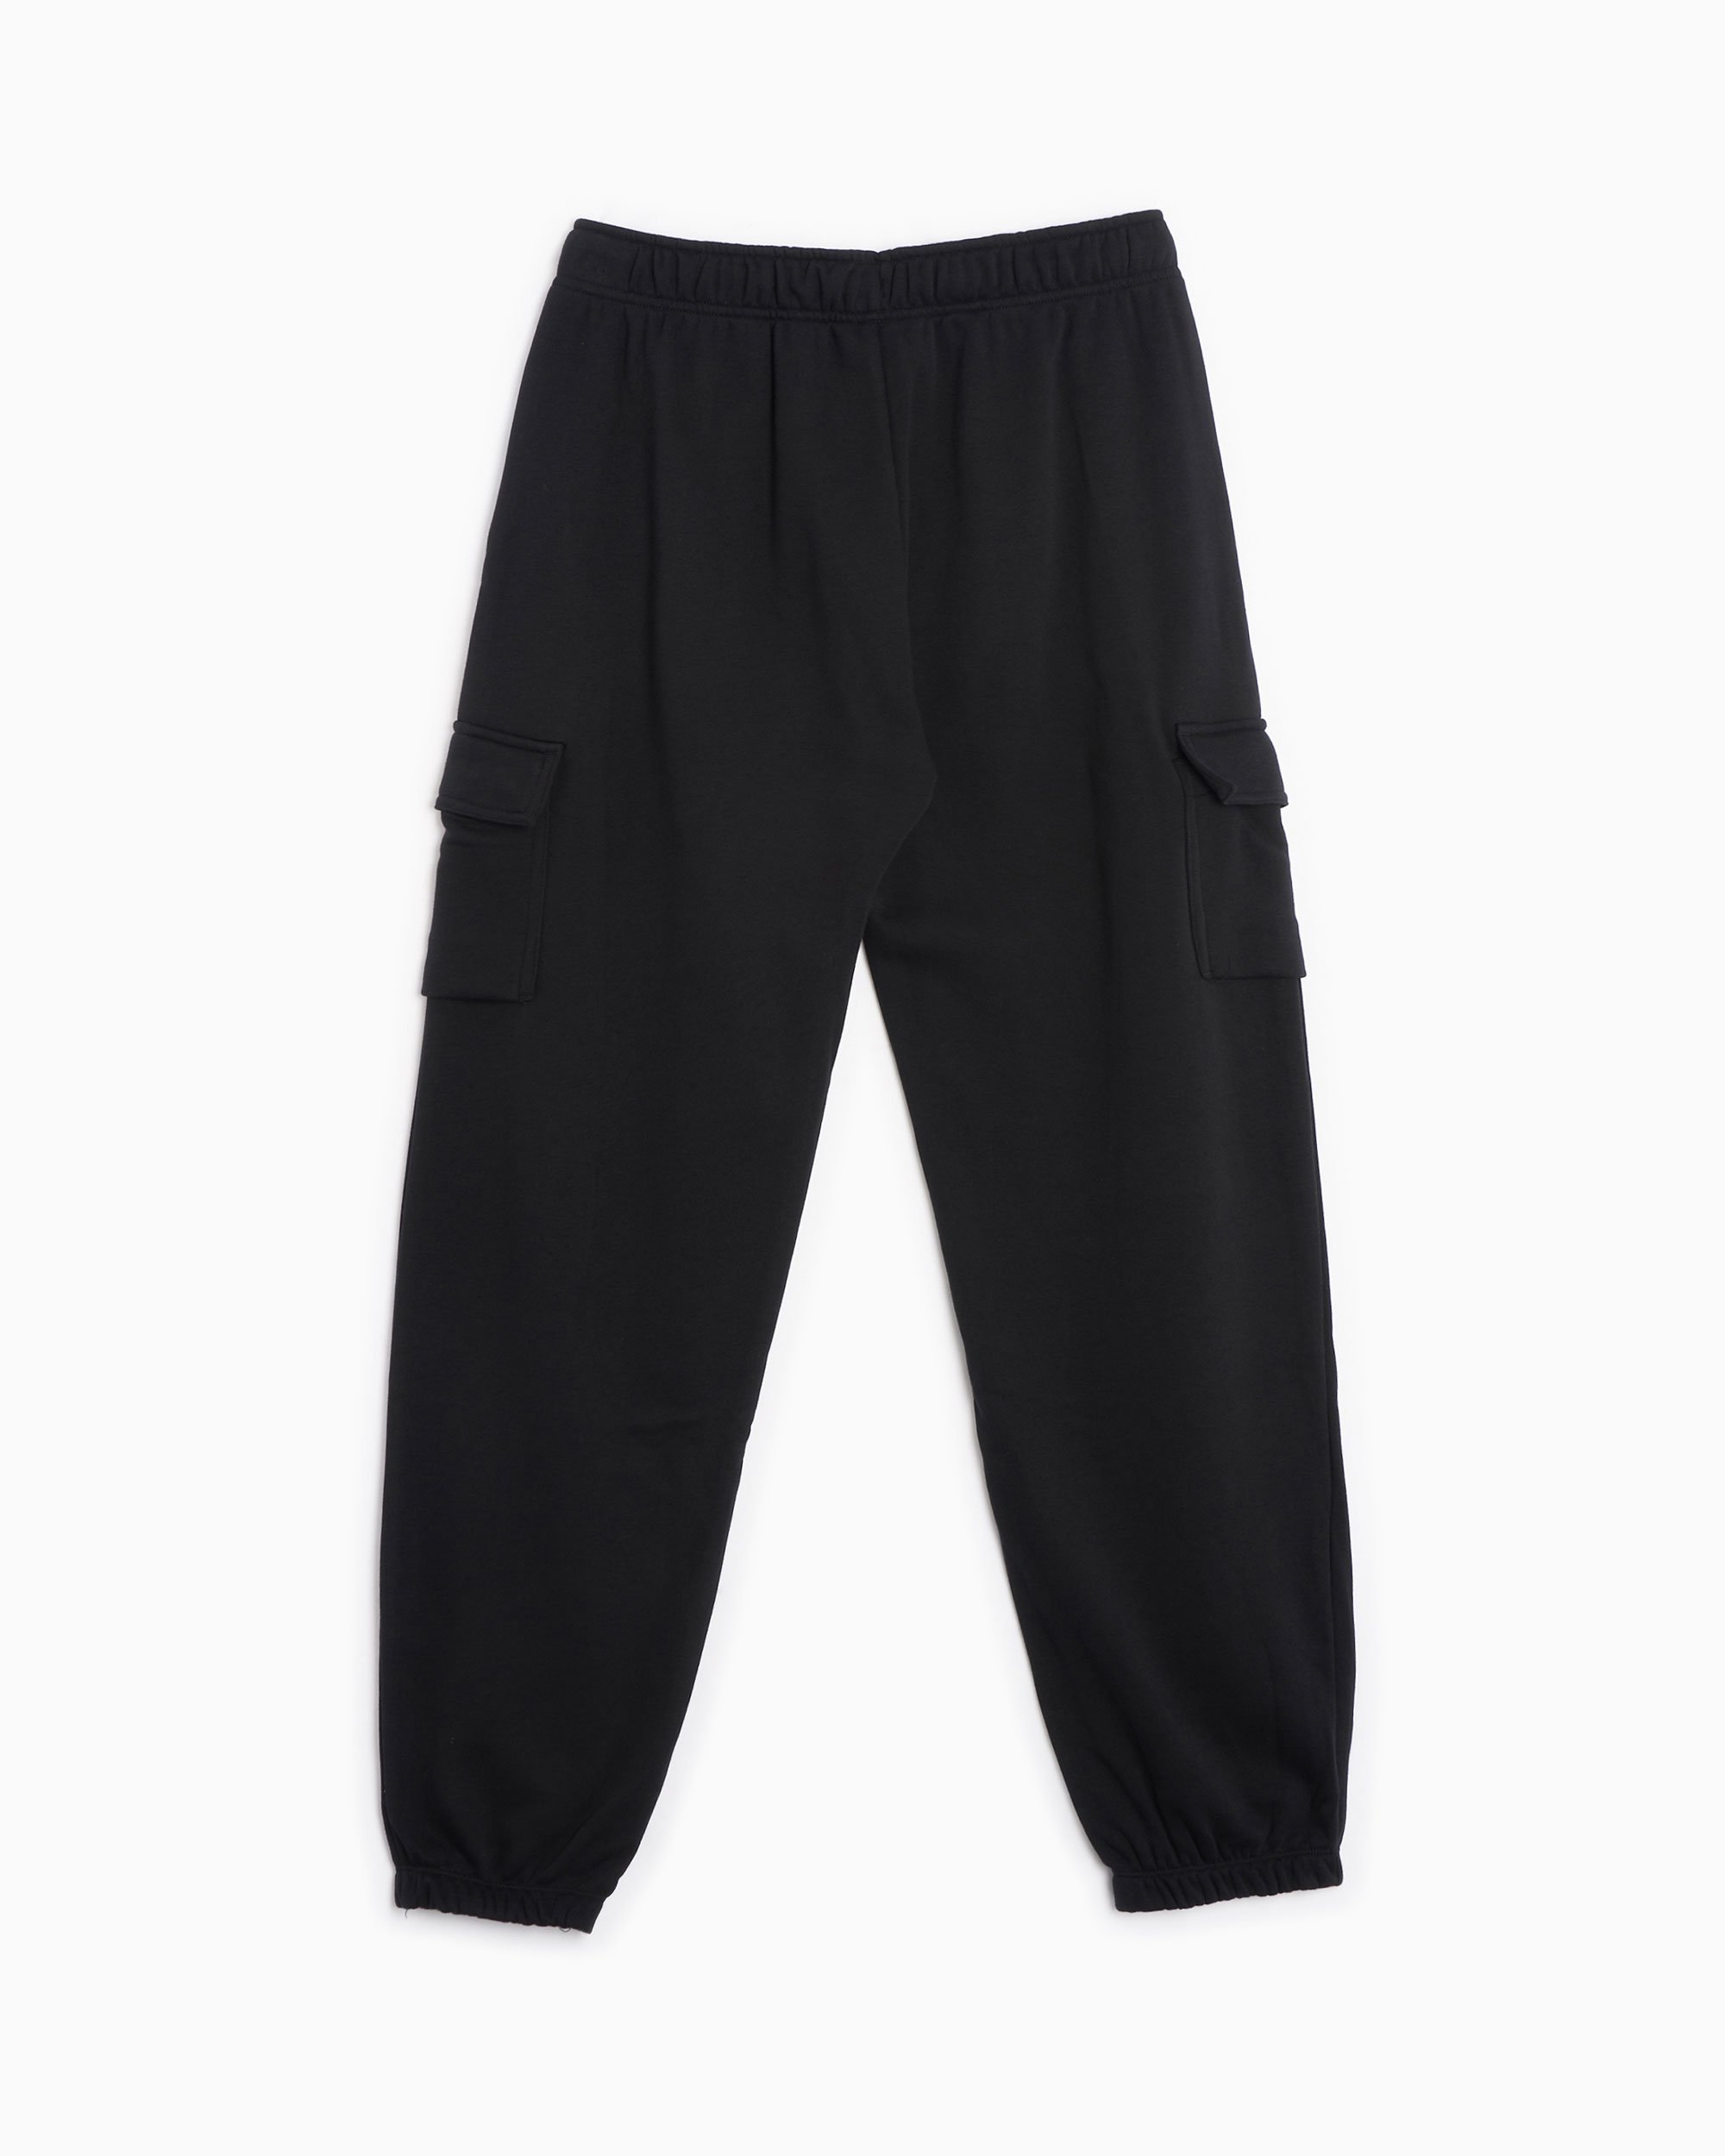 Nike Sportswear Essential Women's Fleece Pants- CI1196-010 - Black